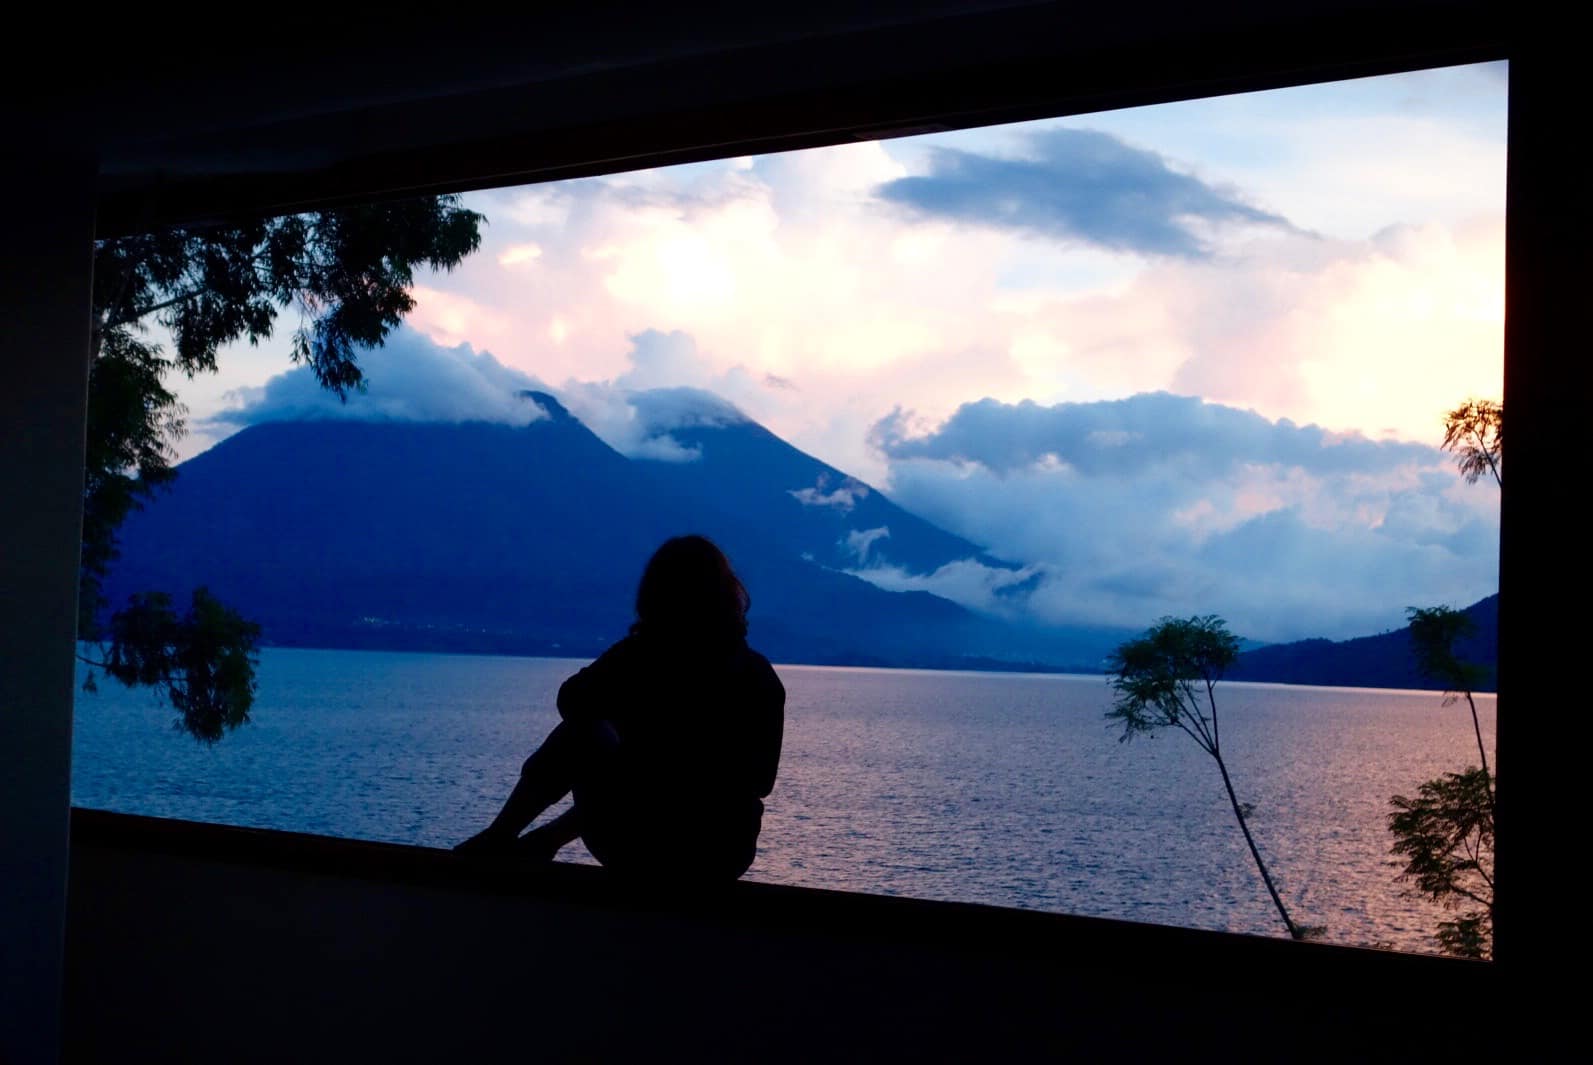 Guatemala photos, lake atitlan travel blogs, indian travellers